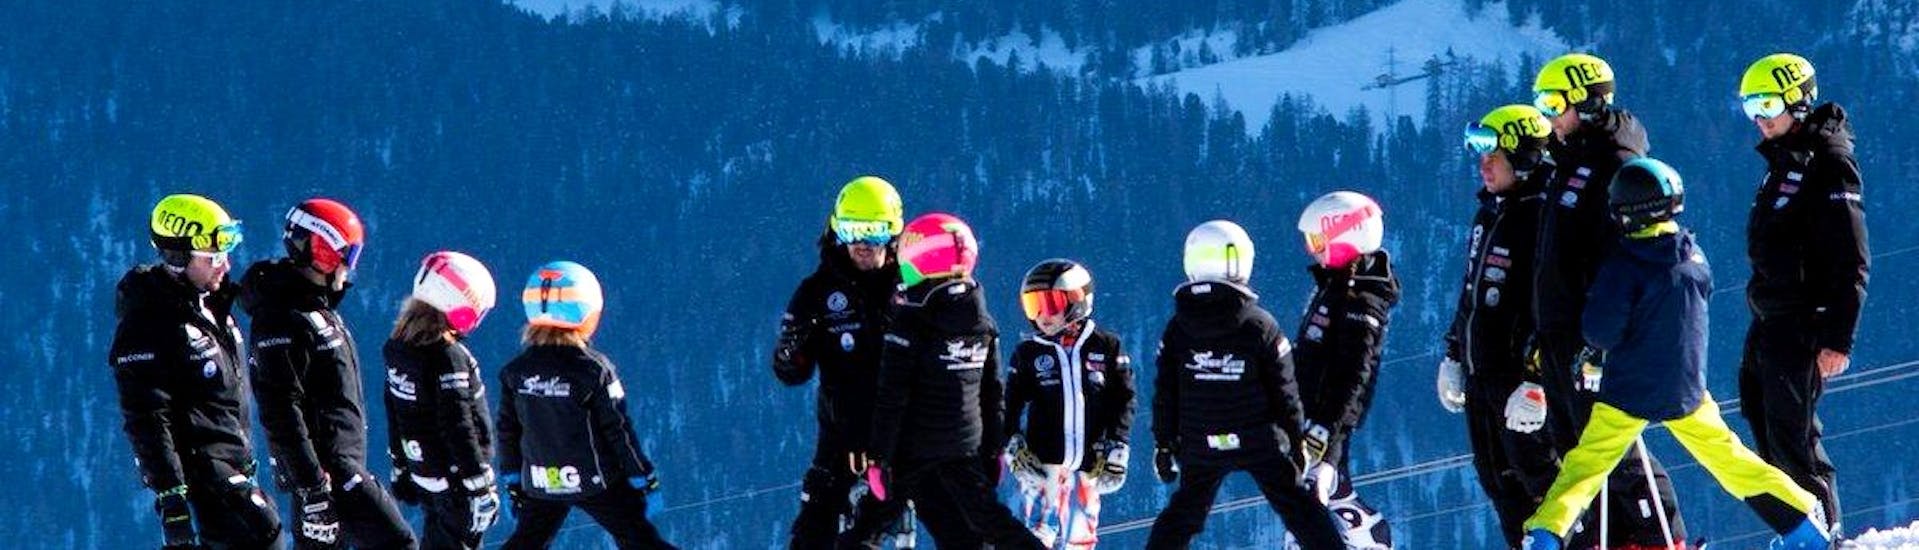 Skiërs maken zich klaar om de piste op te gaan tijdens skilessen voor kinderen voor ervaren skiërs met Giorgio Rocca Ski Academy in Crans-Montana.